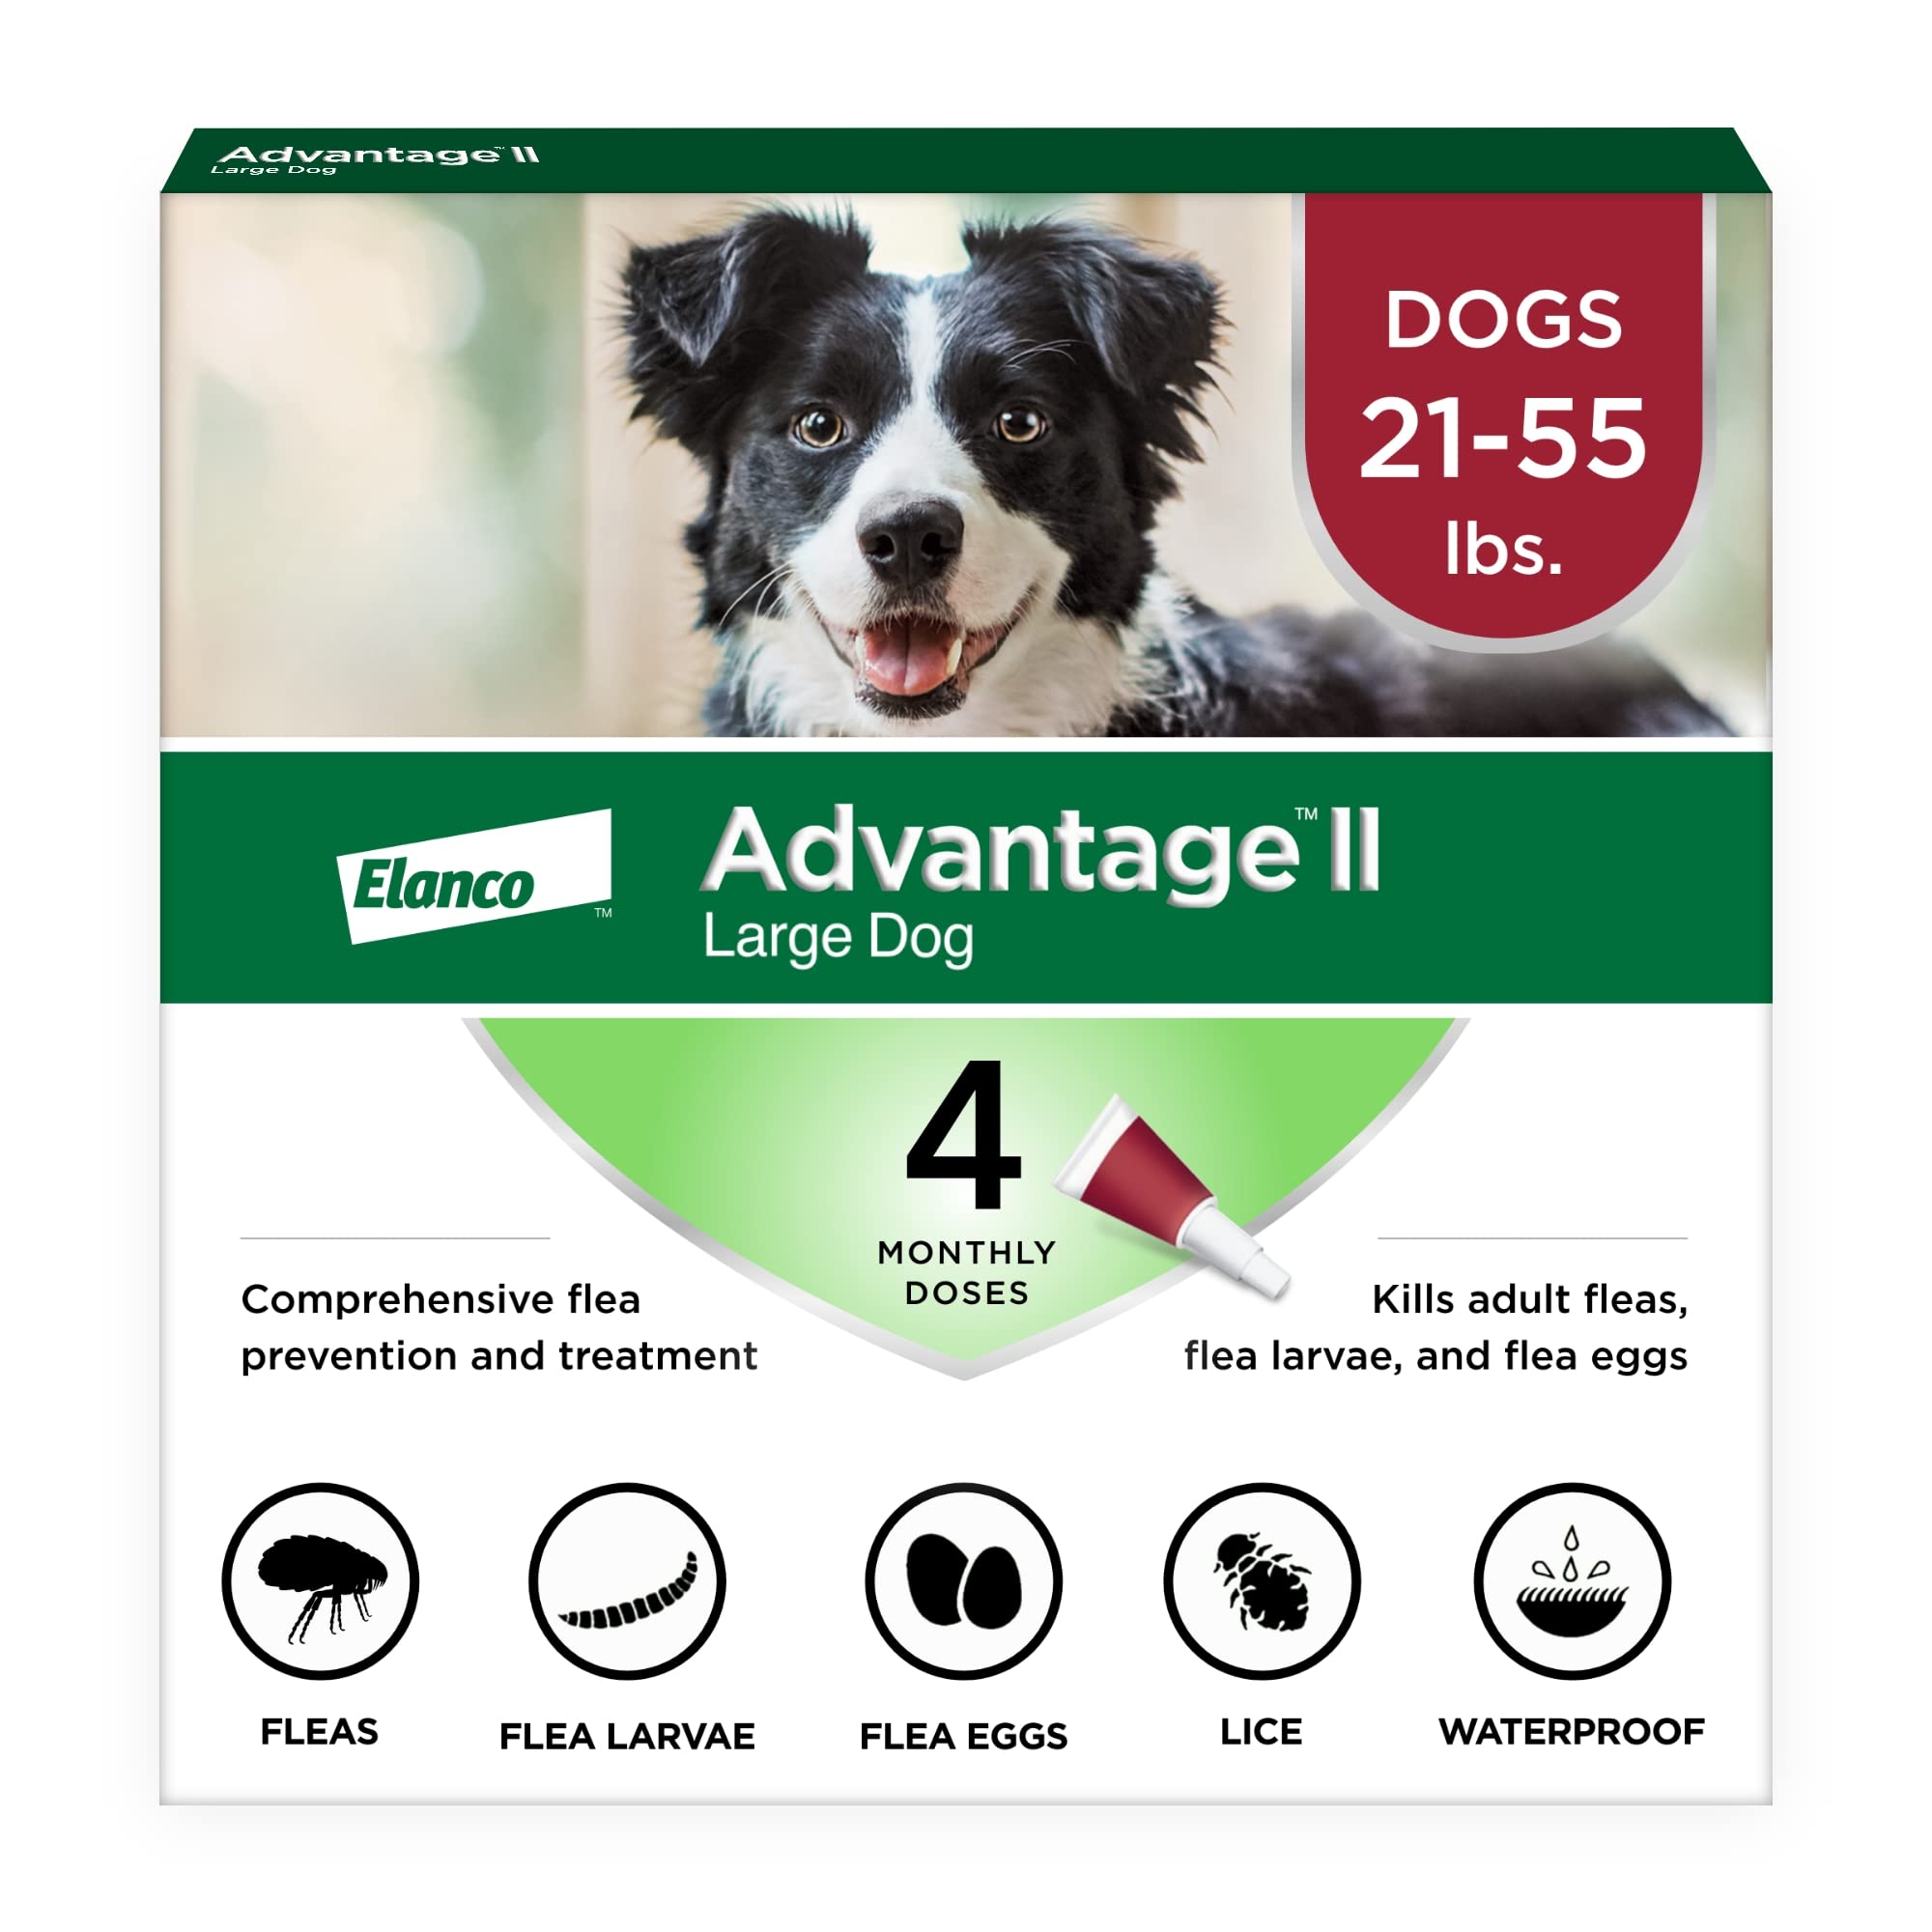 Advantage II Профилактика и лечение блох для крупных собак (21-55 фунтов)